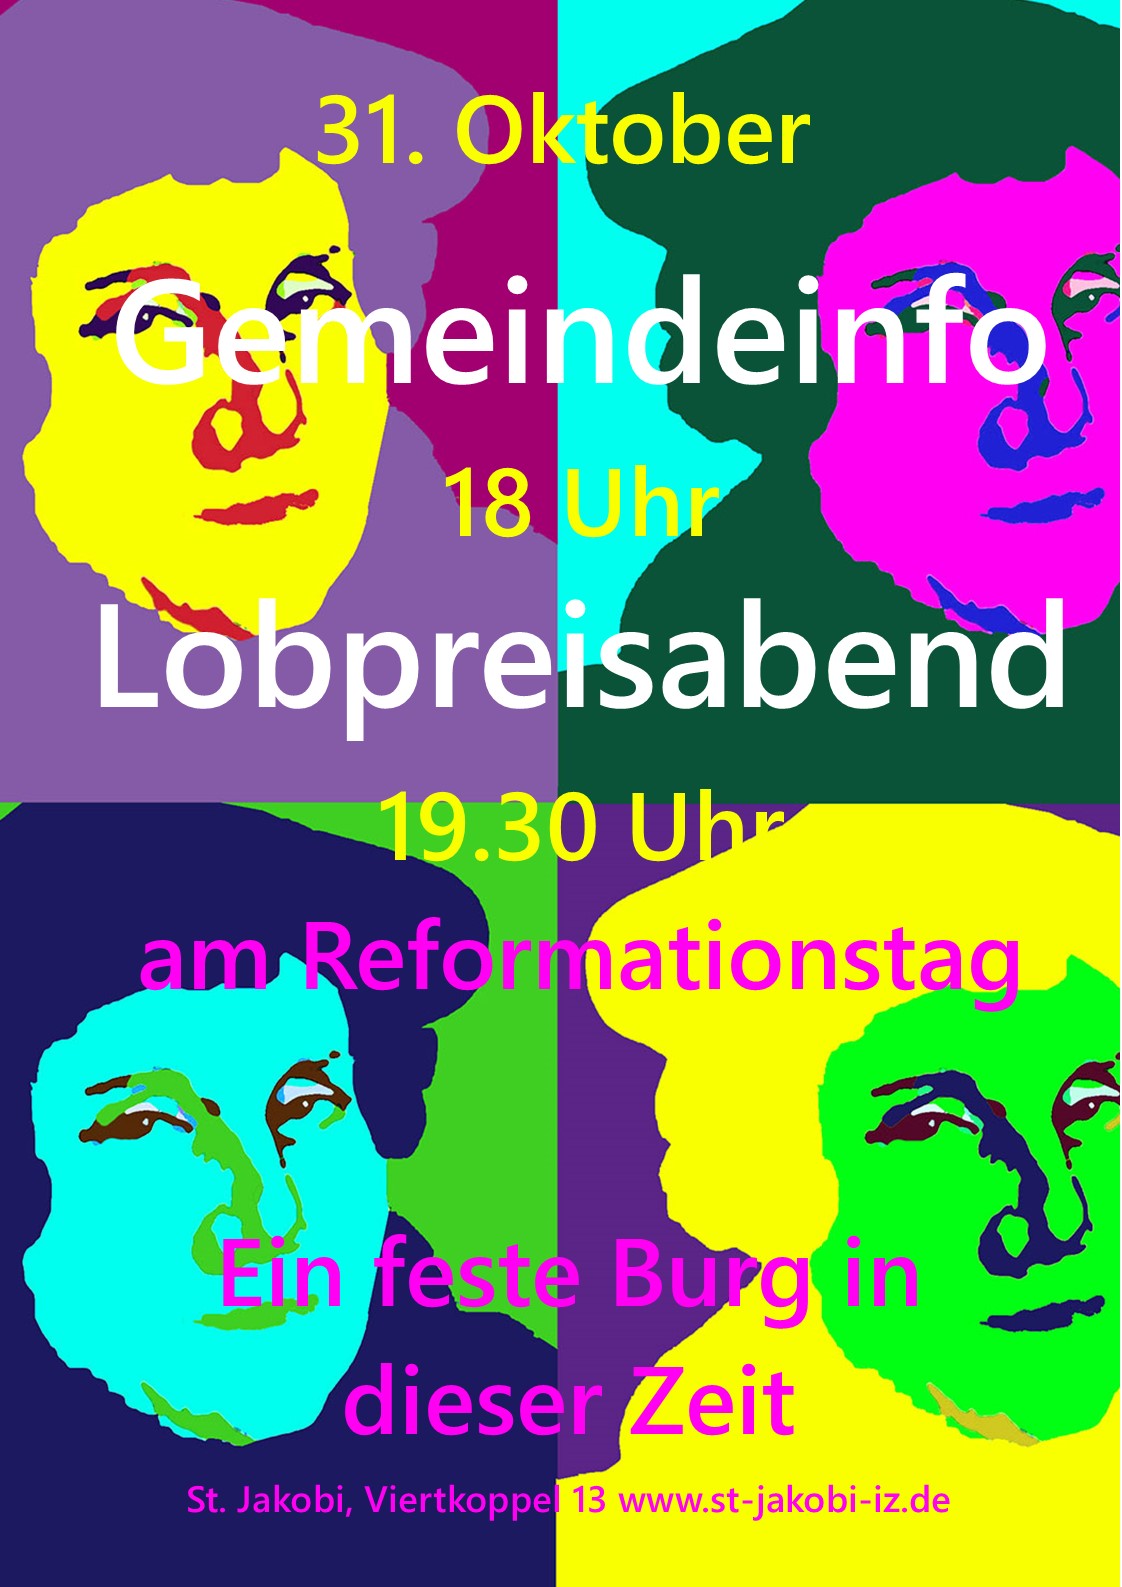 Gemeindeinfo und Lobpreisabend am Reformationstag